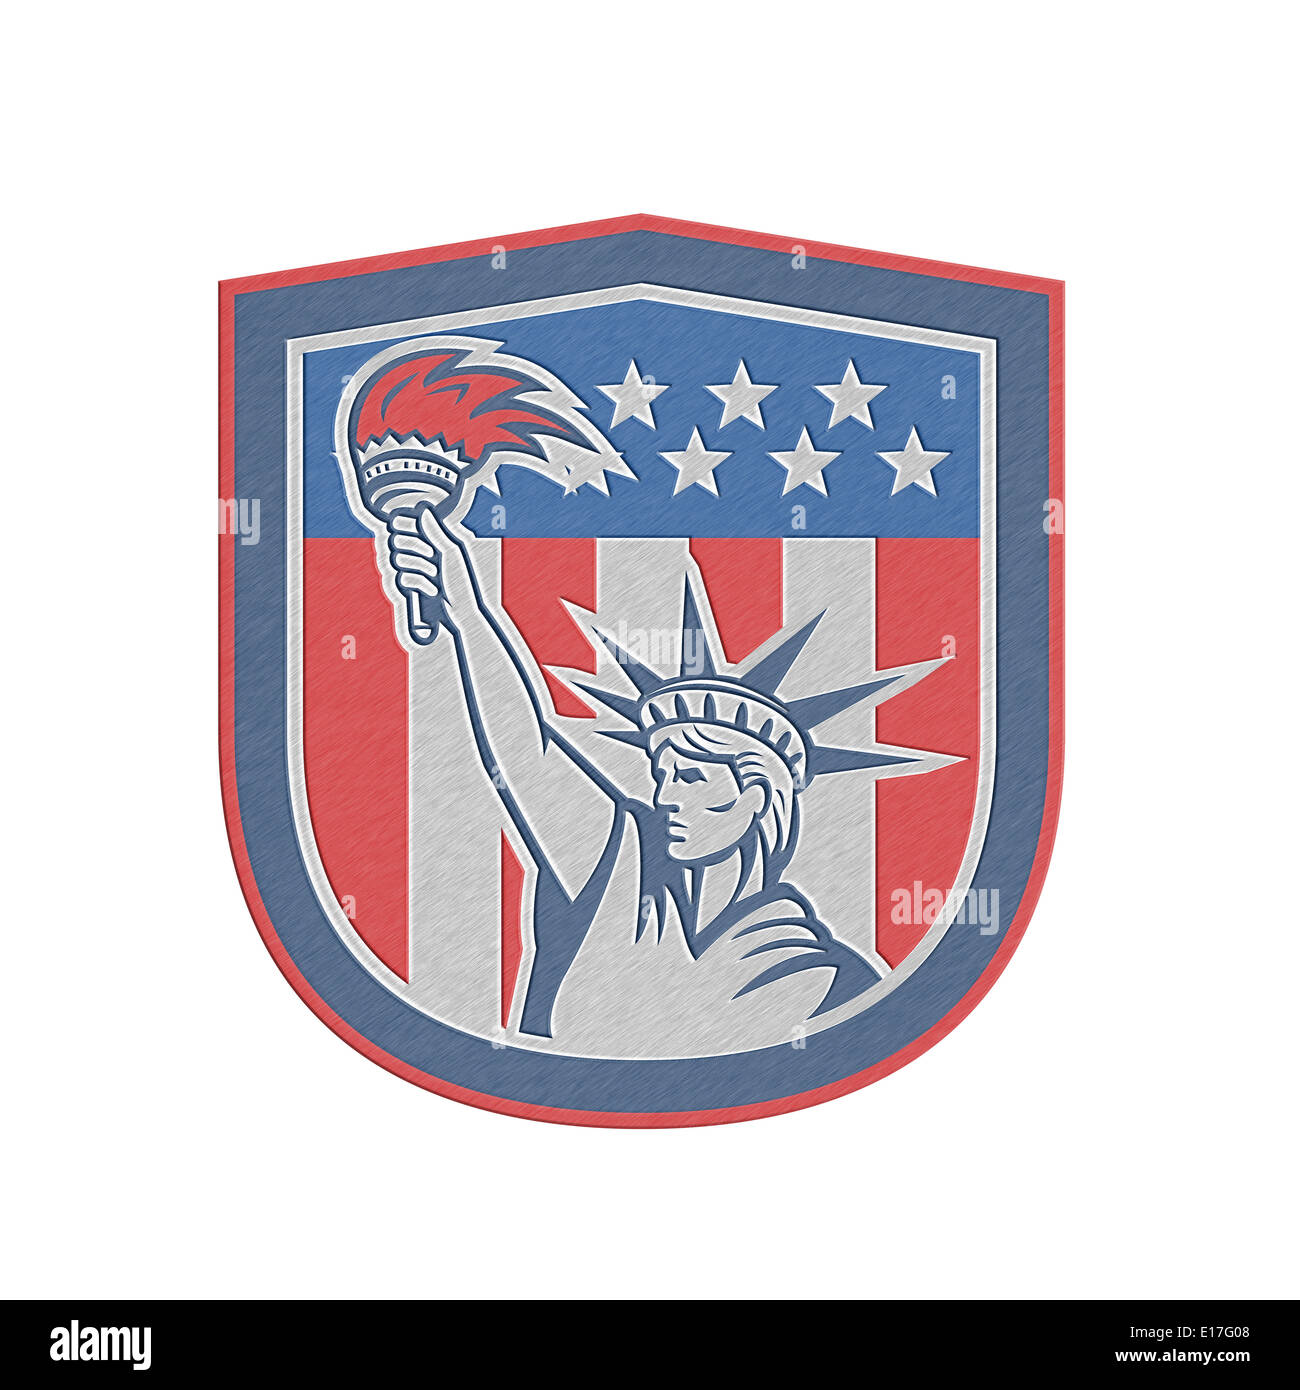 Illustration de style métallique de la statue de la liberté tenant une torche enflammée au drapeau américain stars and stripes background situé à l'intérieur d'un bouclier fait en style rétro. Banque D'Images